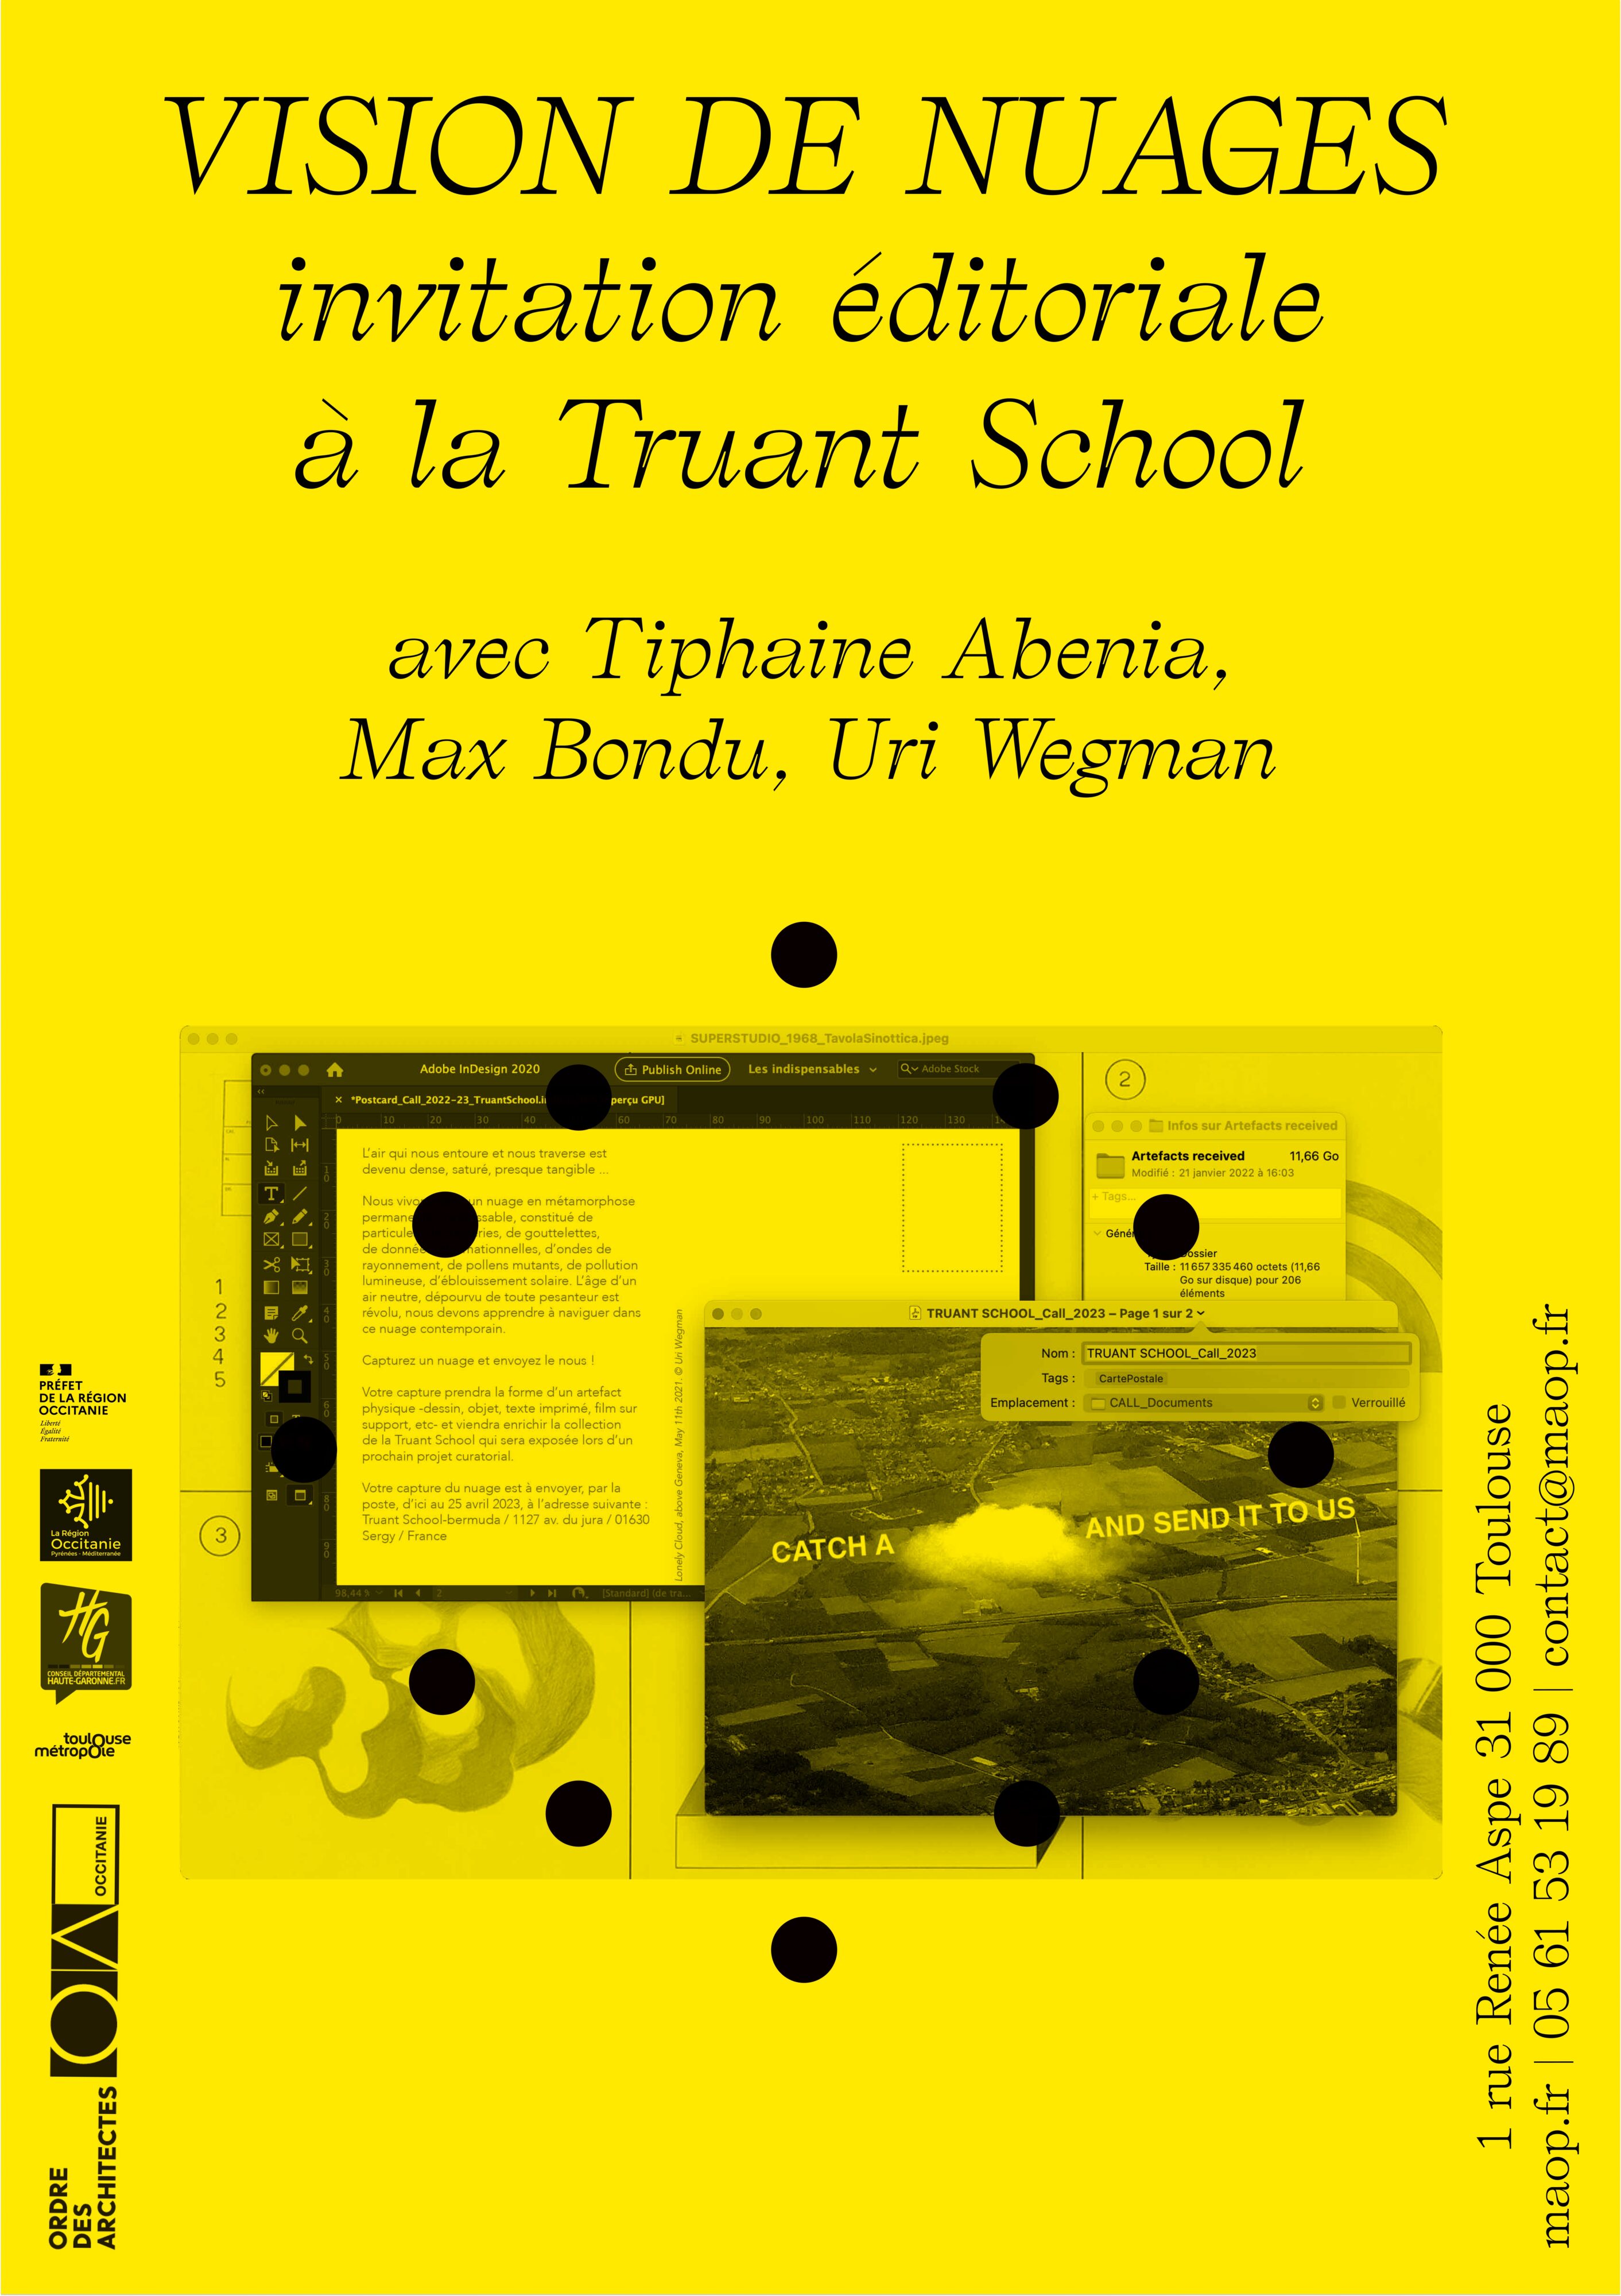 Vision de Nuages : invitation éditoriale à la Truant School